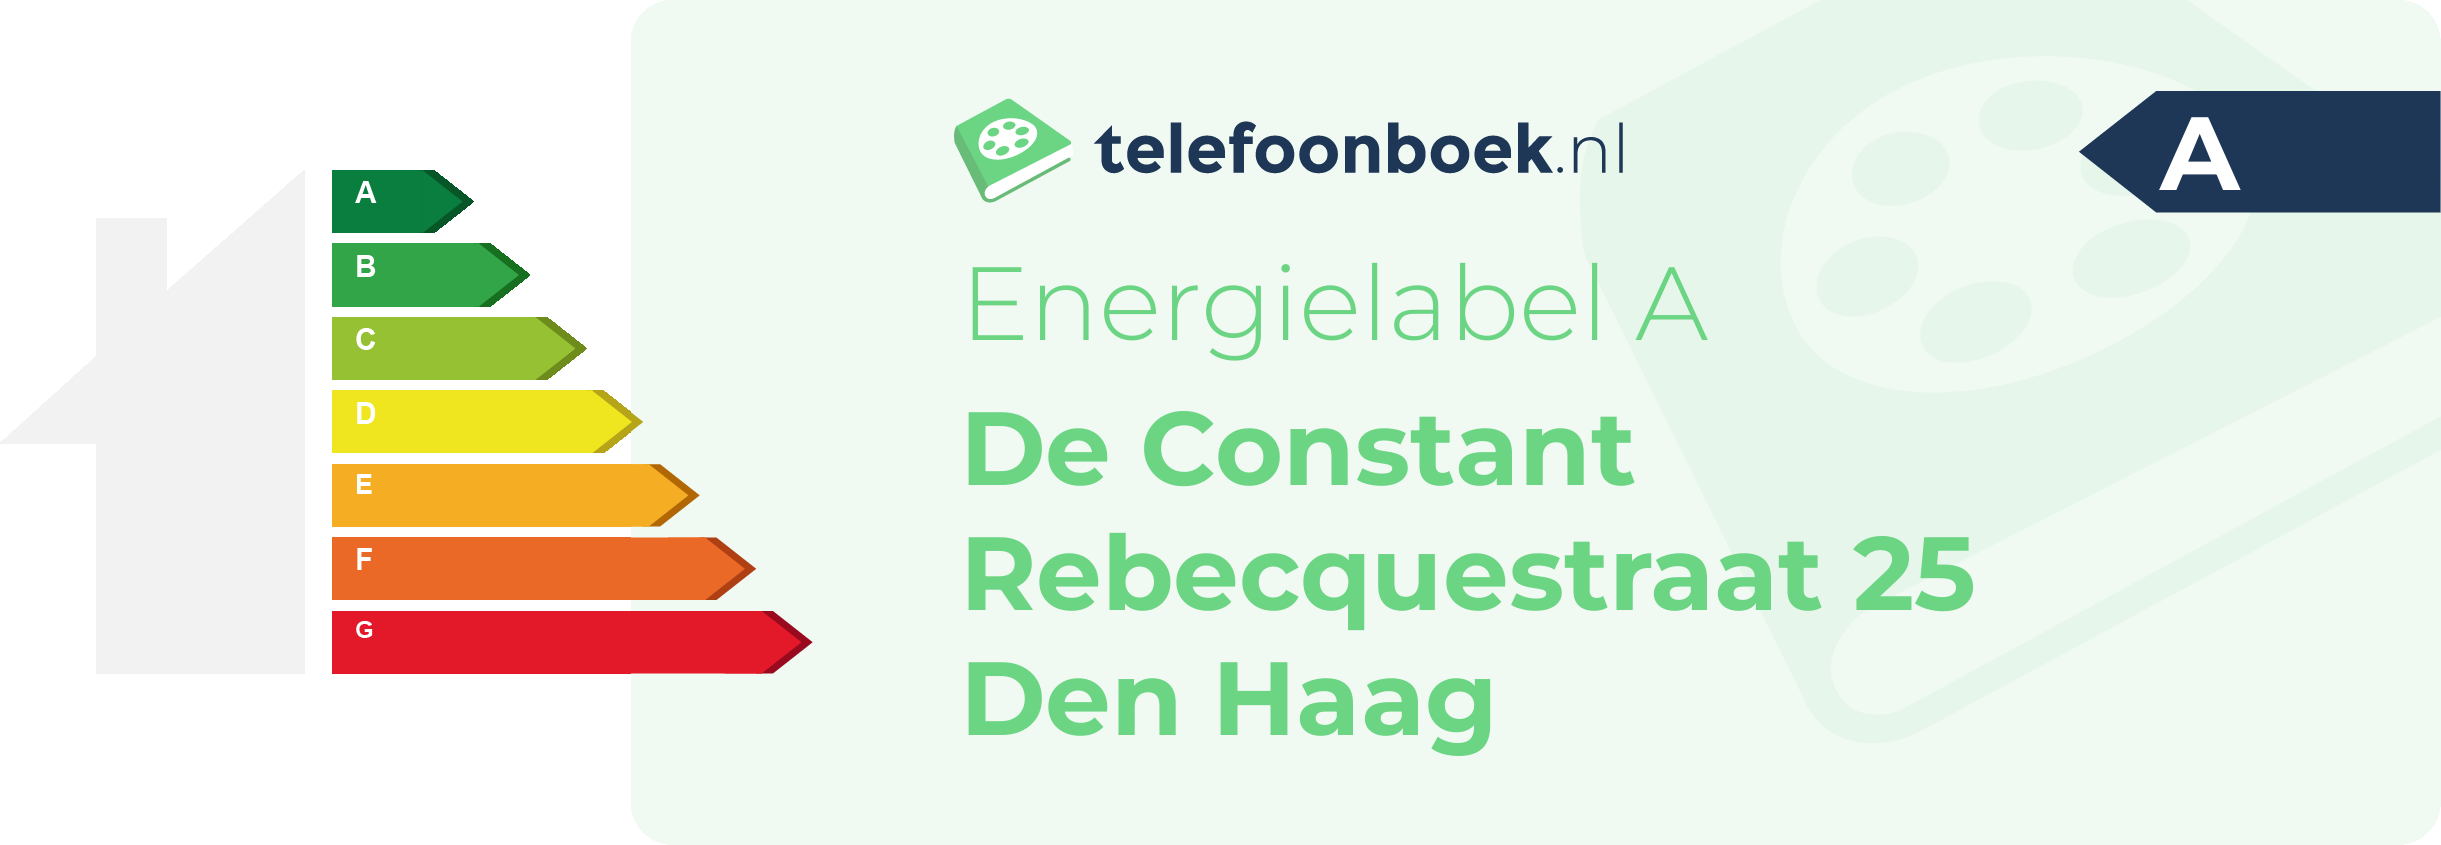 Energielabel De Constant Rebecquestraat 25 Den Haag